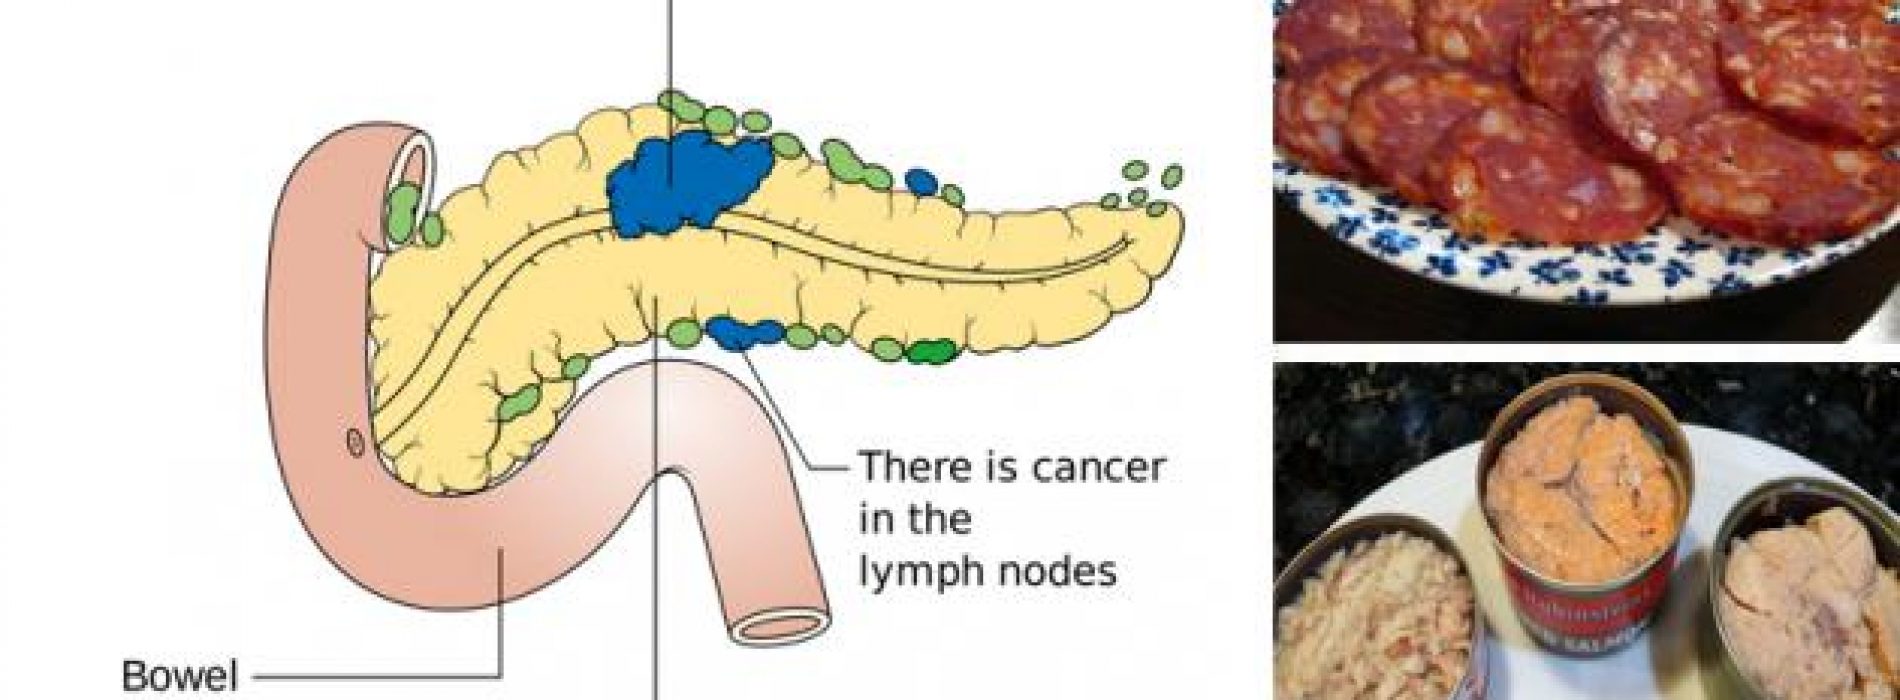 11 Kanker veroorzakende voedingsmiddelen die u nooit meer in uw mond zou moeten stoppen